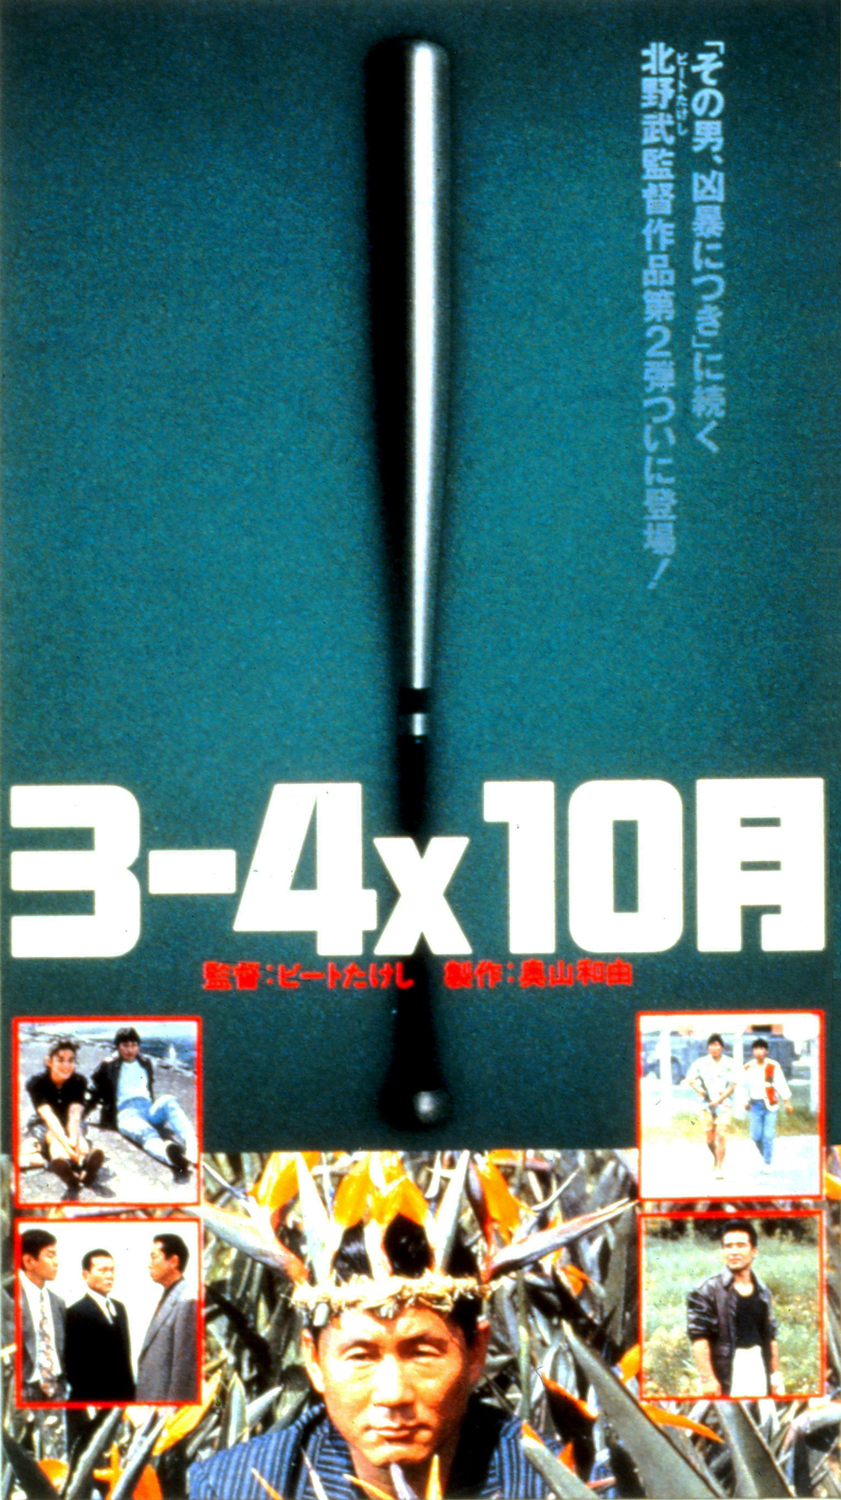 オンラインショップ 3-4x10月 '90バンダイ 松竹富士 DVD 北野武 dayaiwa.moo.jp